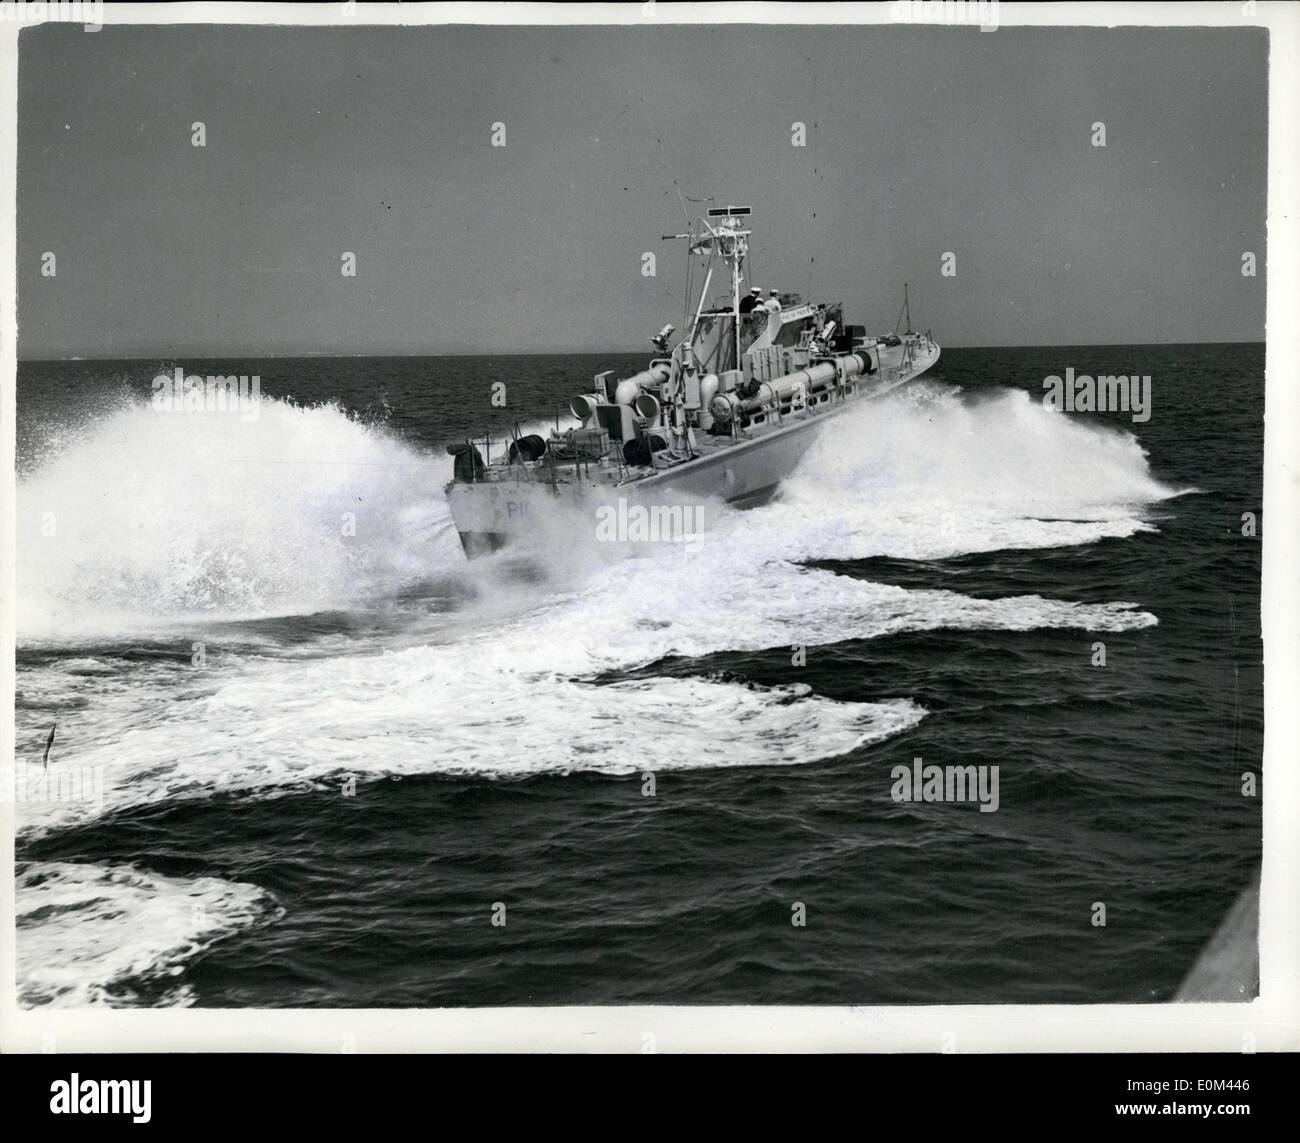 Mai 05, 1953 - La F.P.S. sur ay pour exercices avec DA souhaitent et de navires de la marine norvégienne. Huit bateaux essence fest dont quatre grands boas un bateau quatre courtes dans le Hornet R.m.s. gauche hier sensibles - pour les eaux danoises à prendre part à des exercices avec des unités f la Royal Danish Norwegian ad marines. Les Britanniques (f.p.B's étaient sous le félicite de Lieut. coma J.A. Syne D.E.U. R.N. photo montre la vue de ''Gay-tireur'' - l'un des plus récents F.p.t. - Comme elle fait son chemin dans l'eau sur était être le Danemark. Banque D'Images